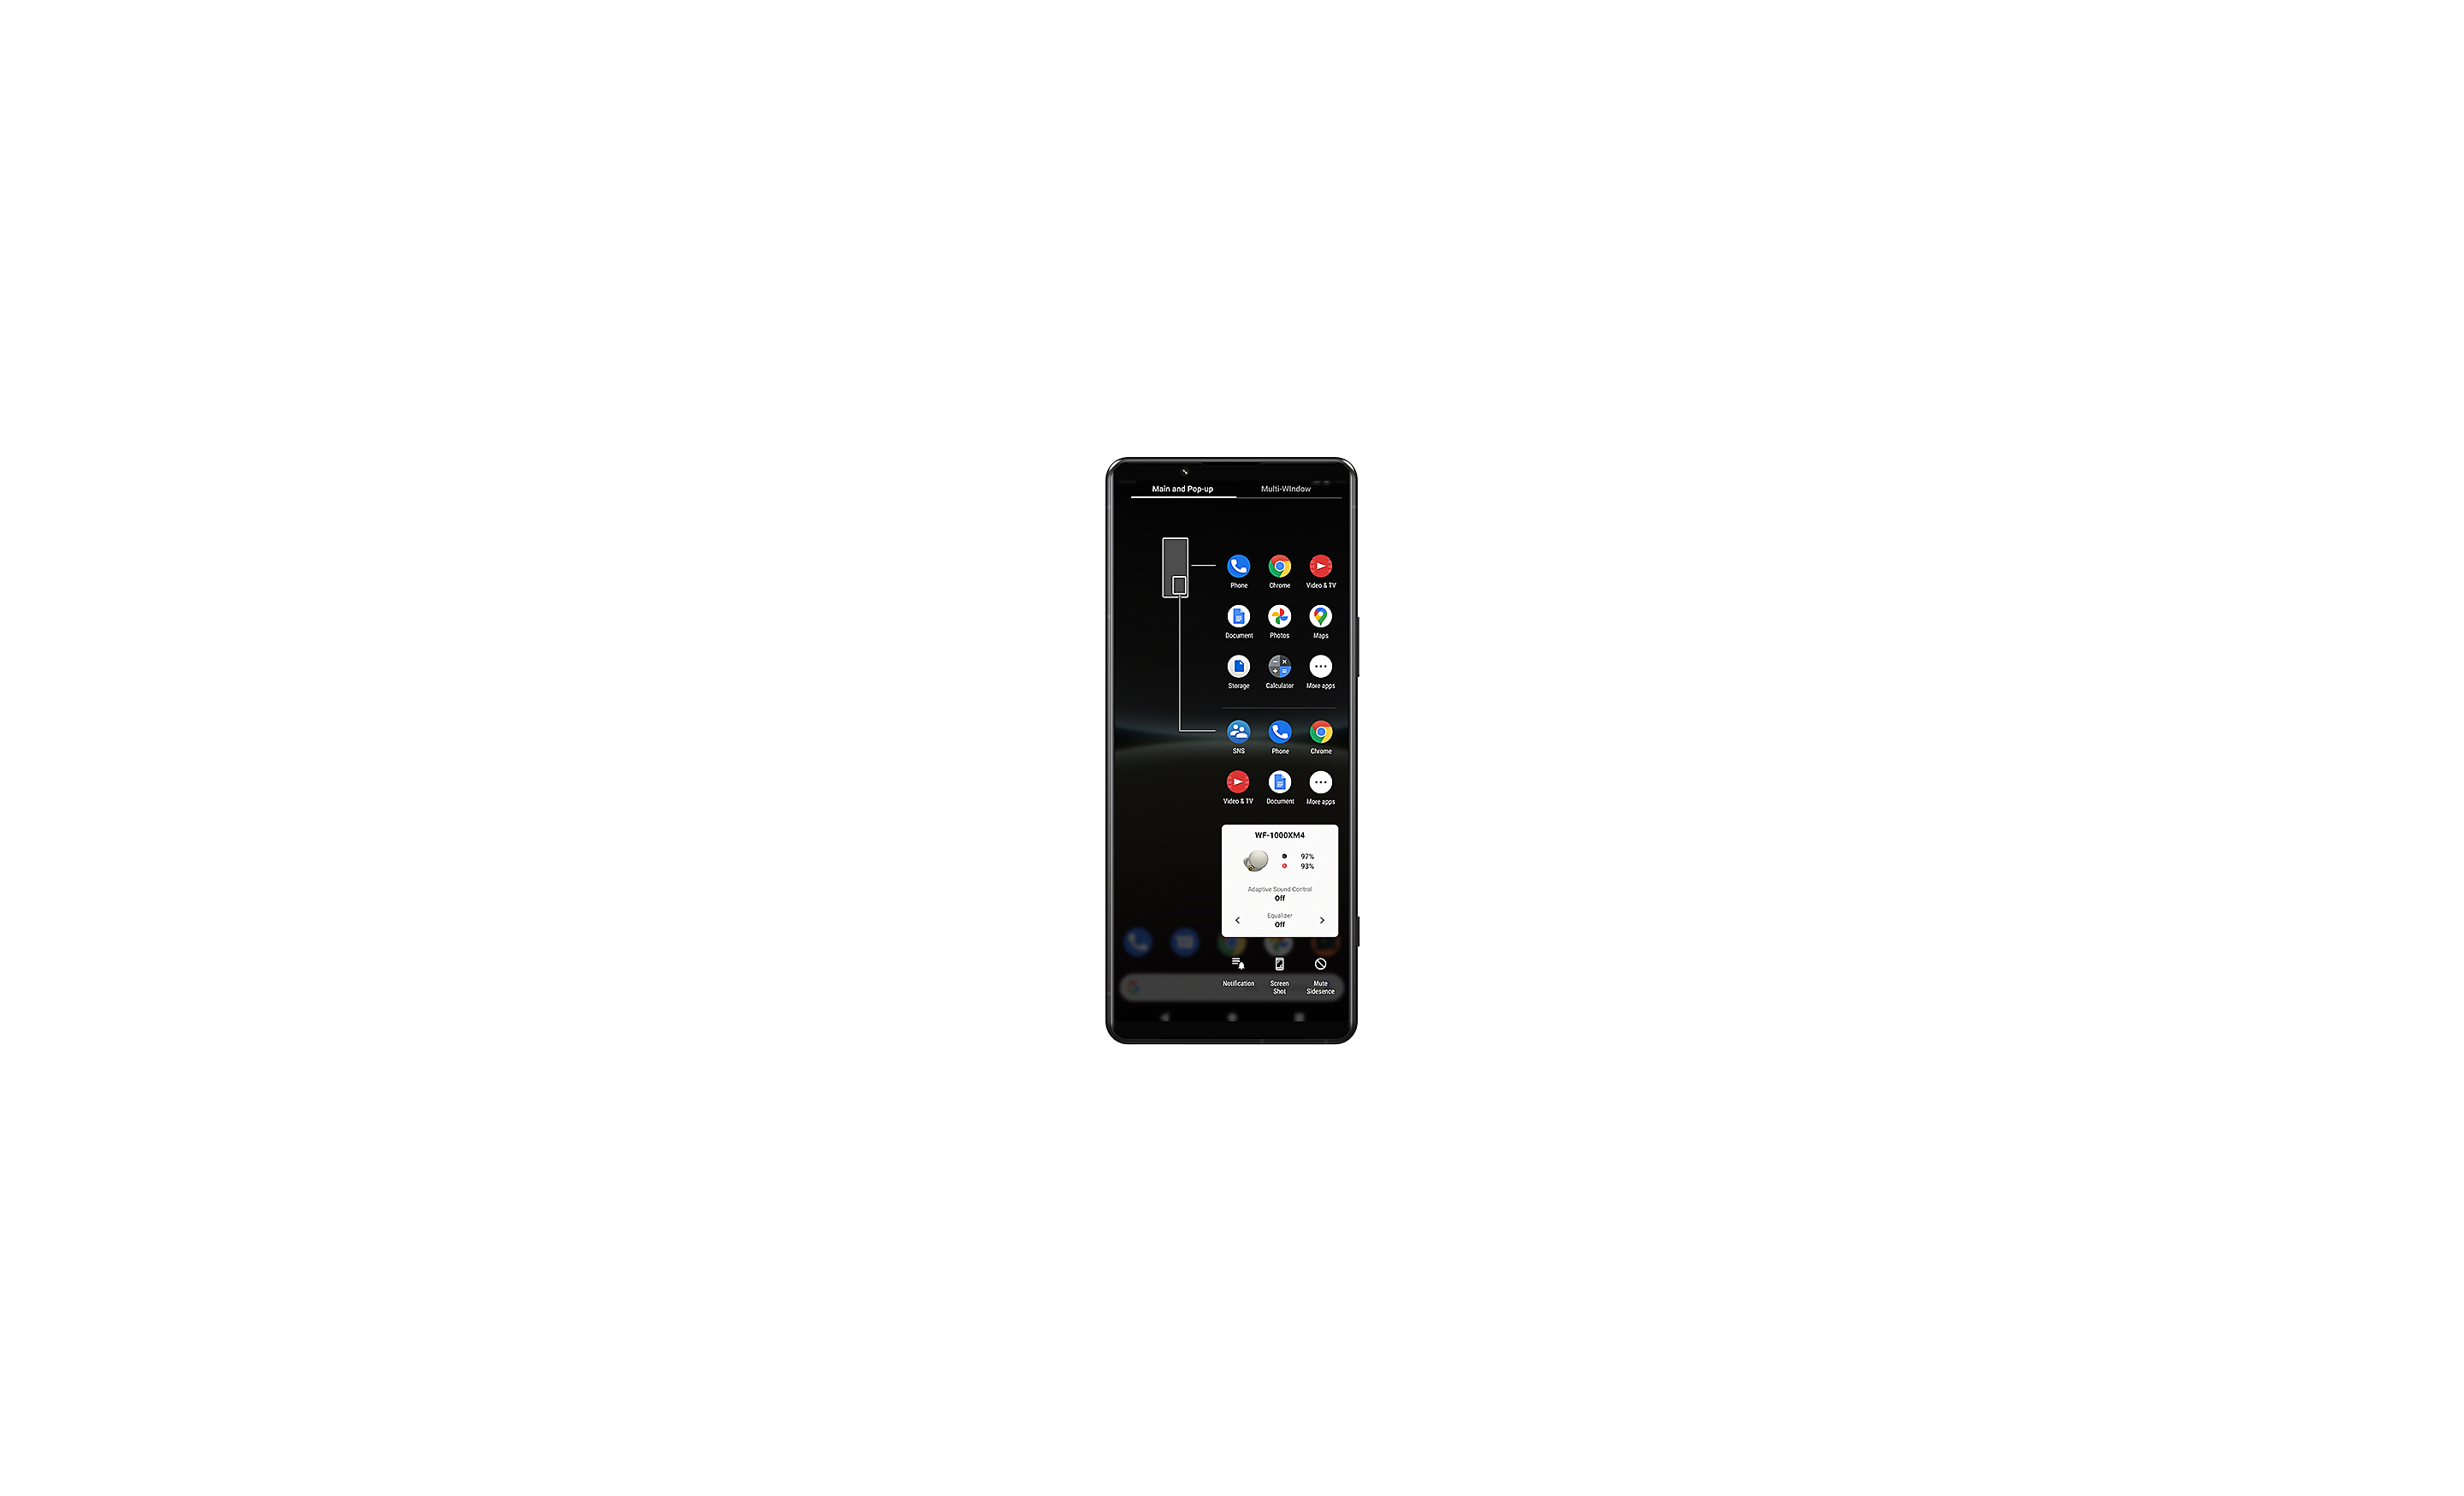 Smartphone Xperia affichant l'interface utilisateur du gestionnaire de fenêtres